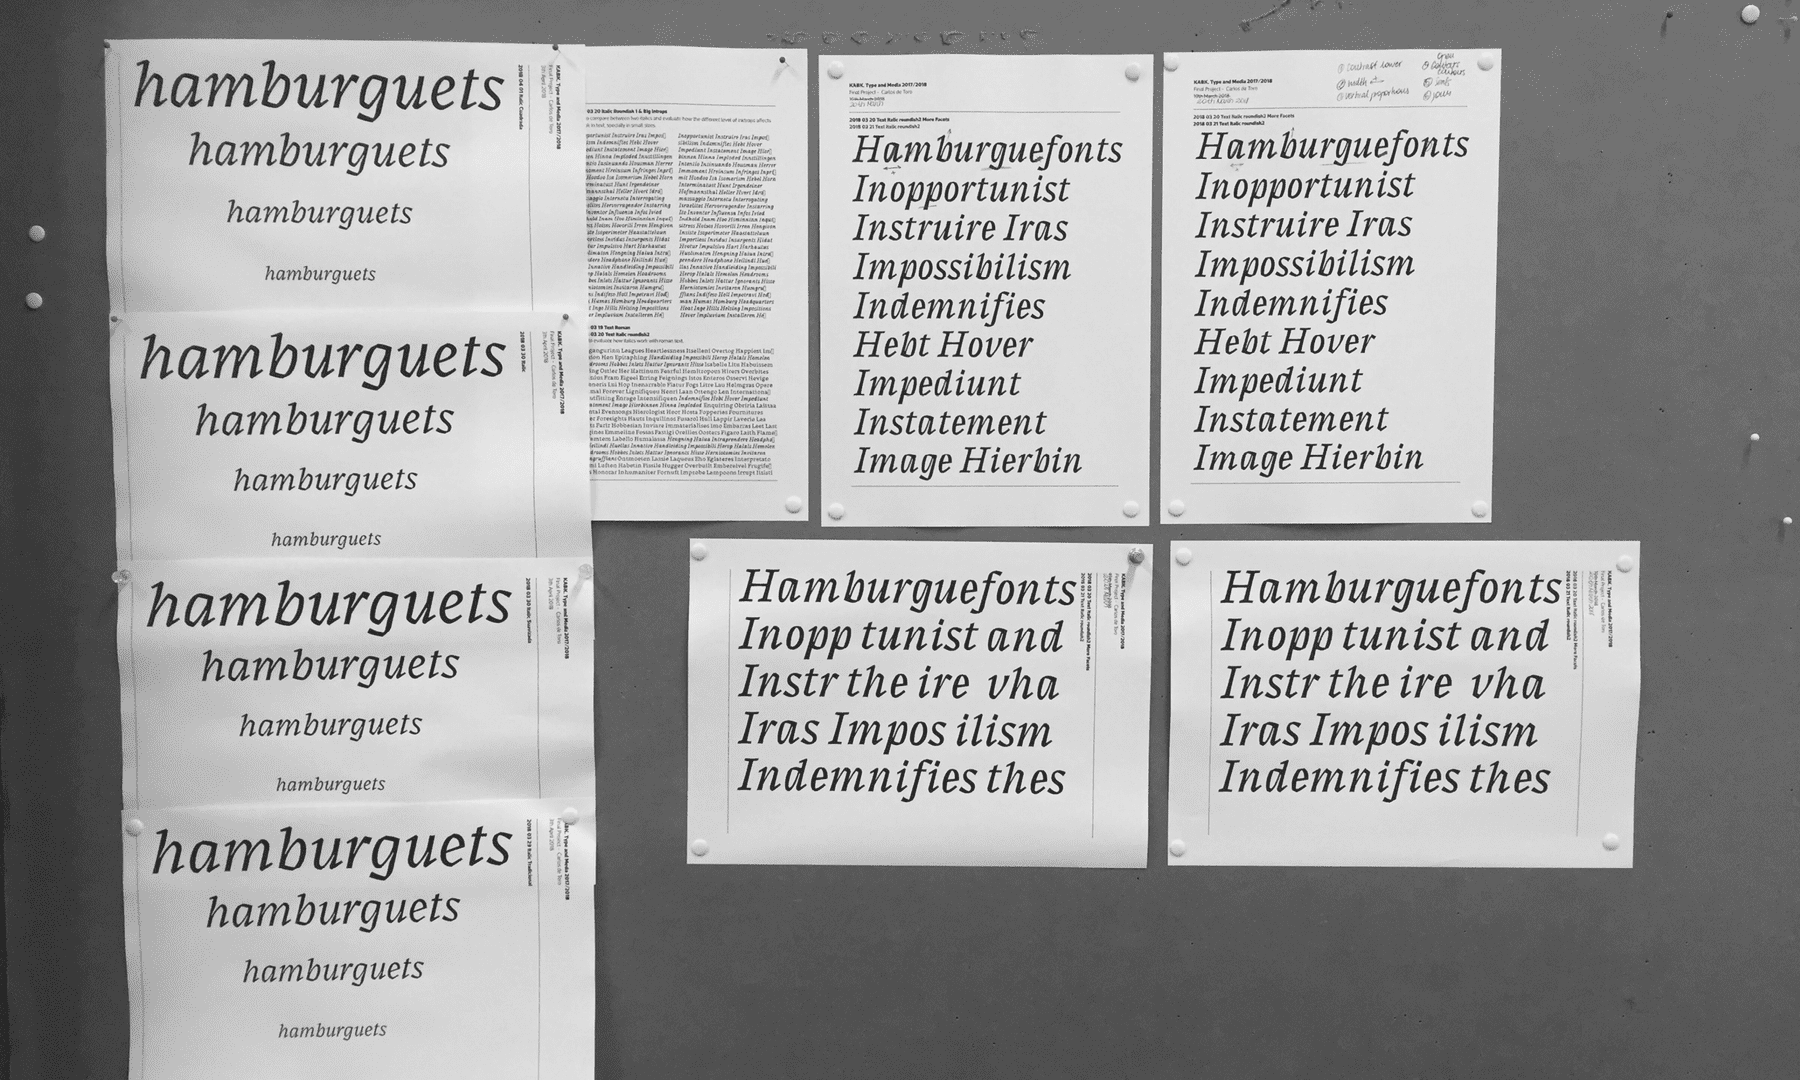 Azor Typeface - Carlos de Toro - Type and Media 2018